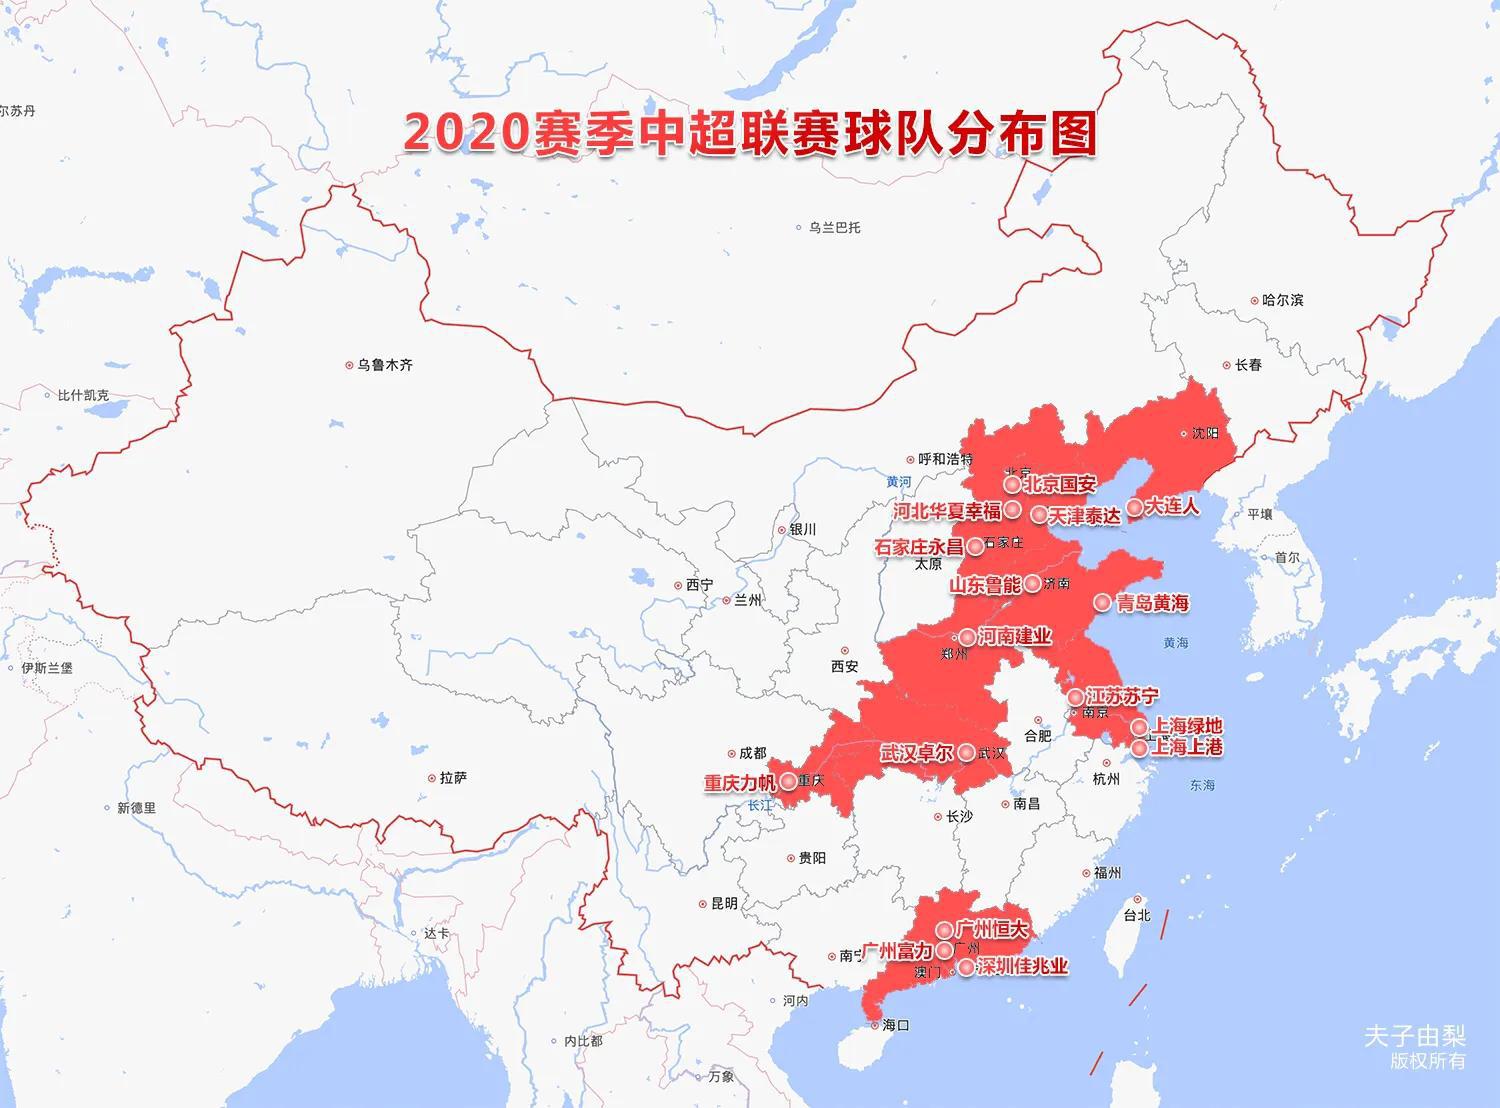 中超俱乐部分布 2020中超球队分布图(1)